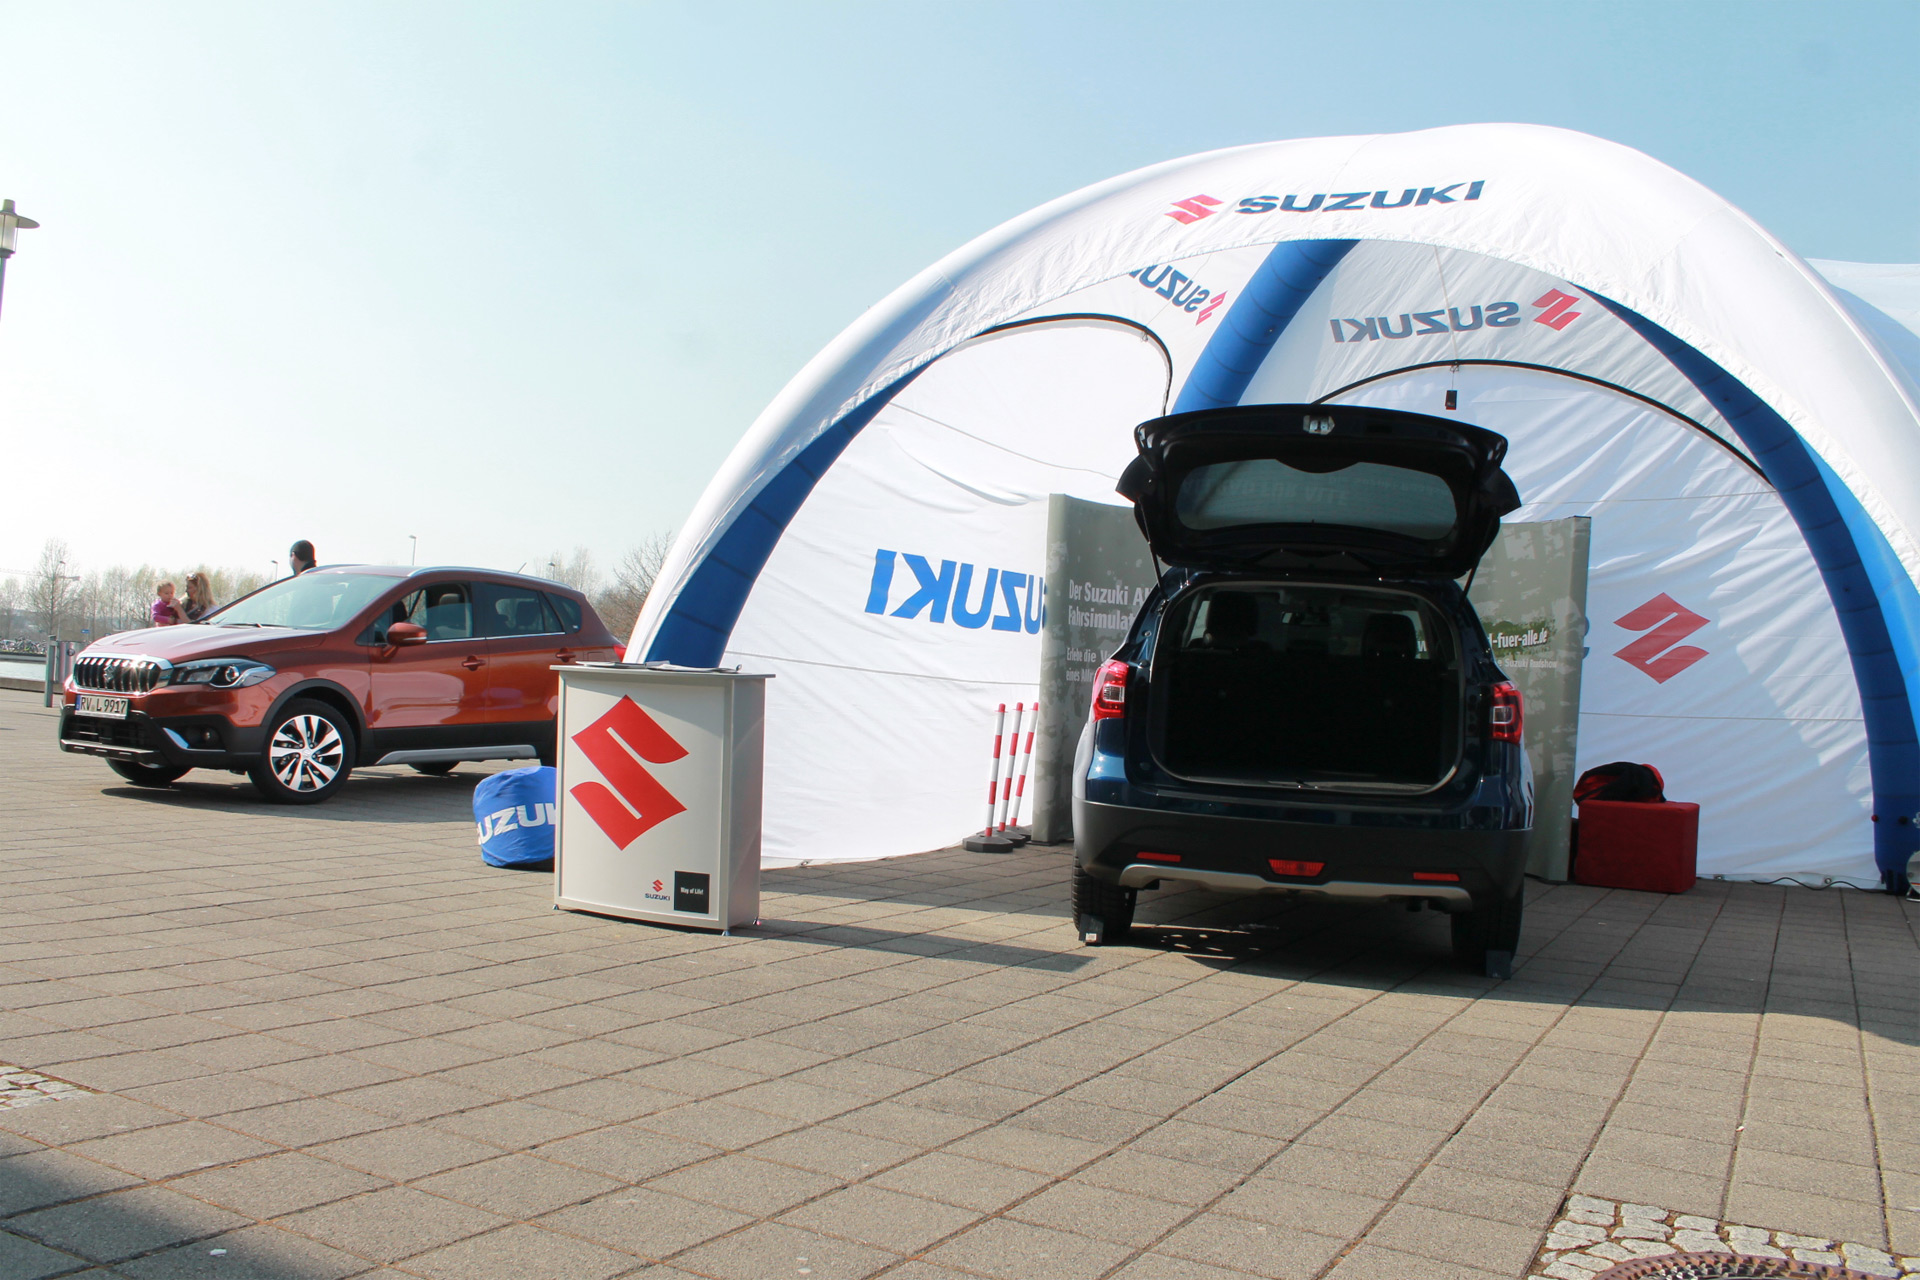 Suzuki Roadshow Allrad für alle – Friedrichshafen